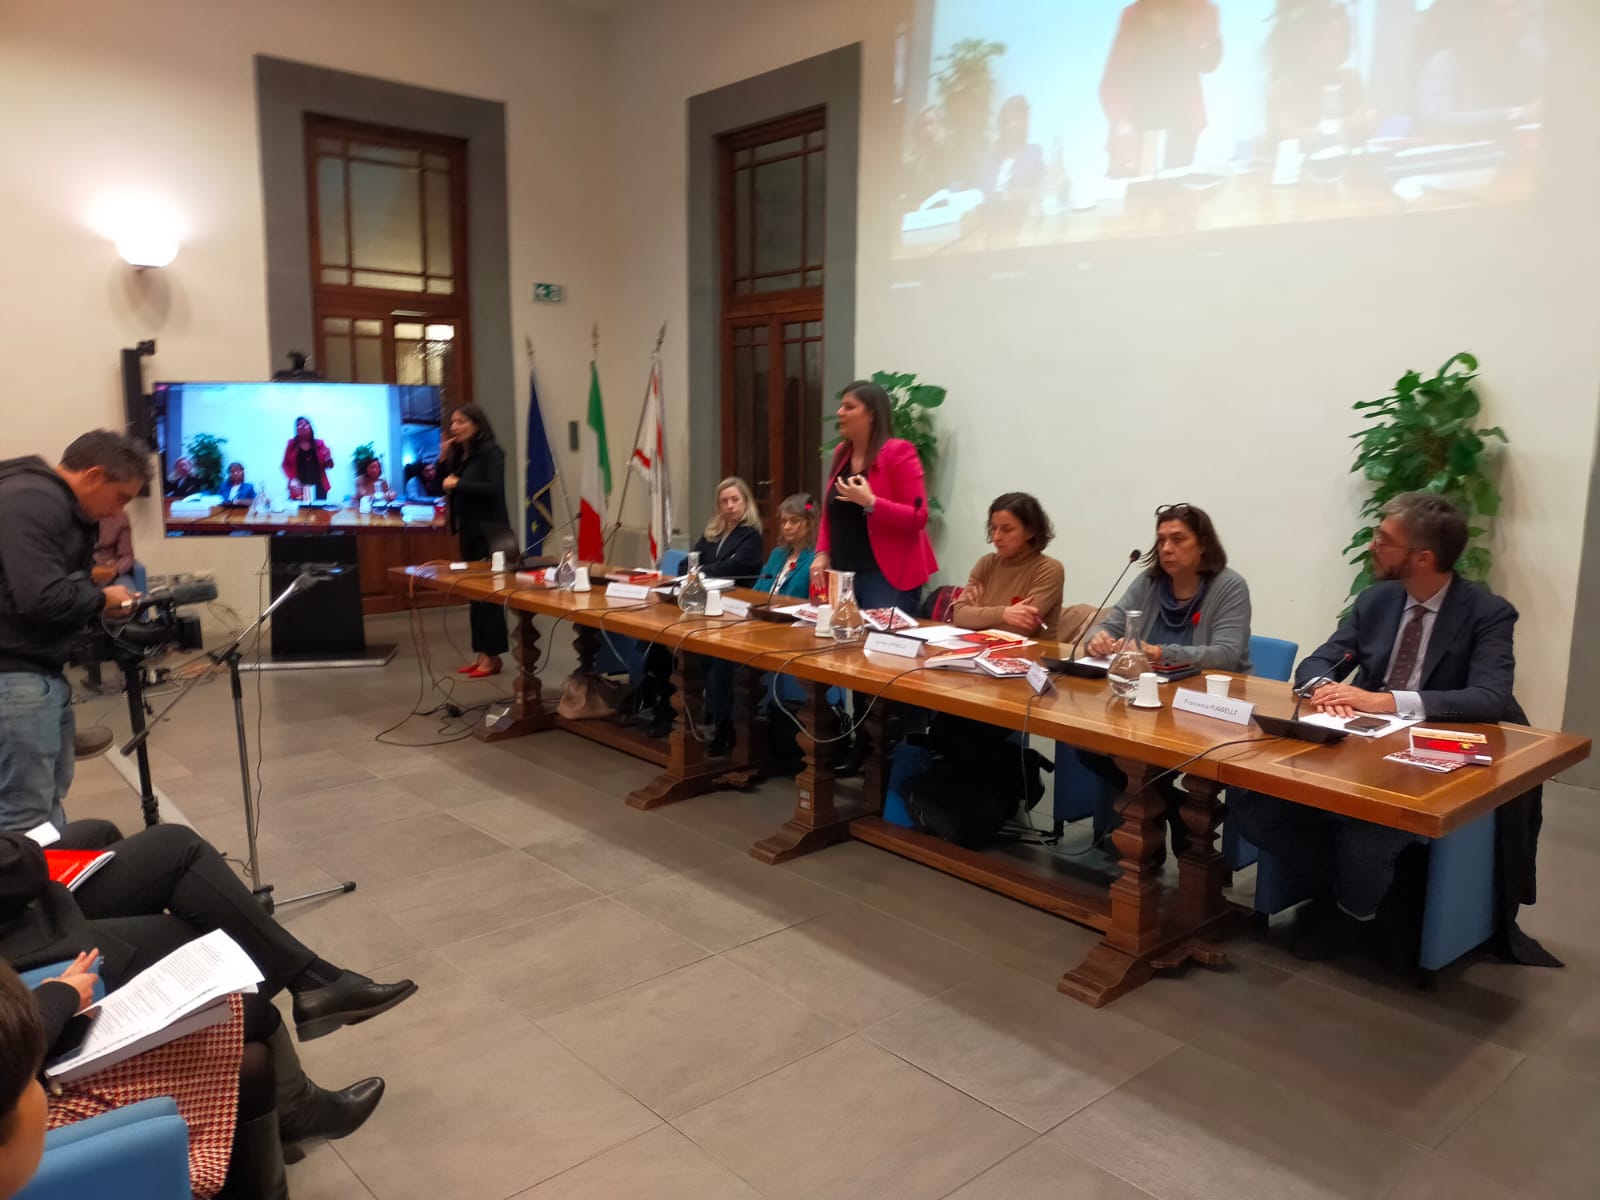 Immagine XIV rapporto sulla violenza di genere in Toscana, le dichiarazioni di Spinelli e Nardini